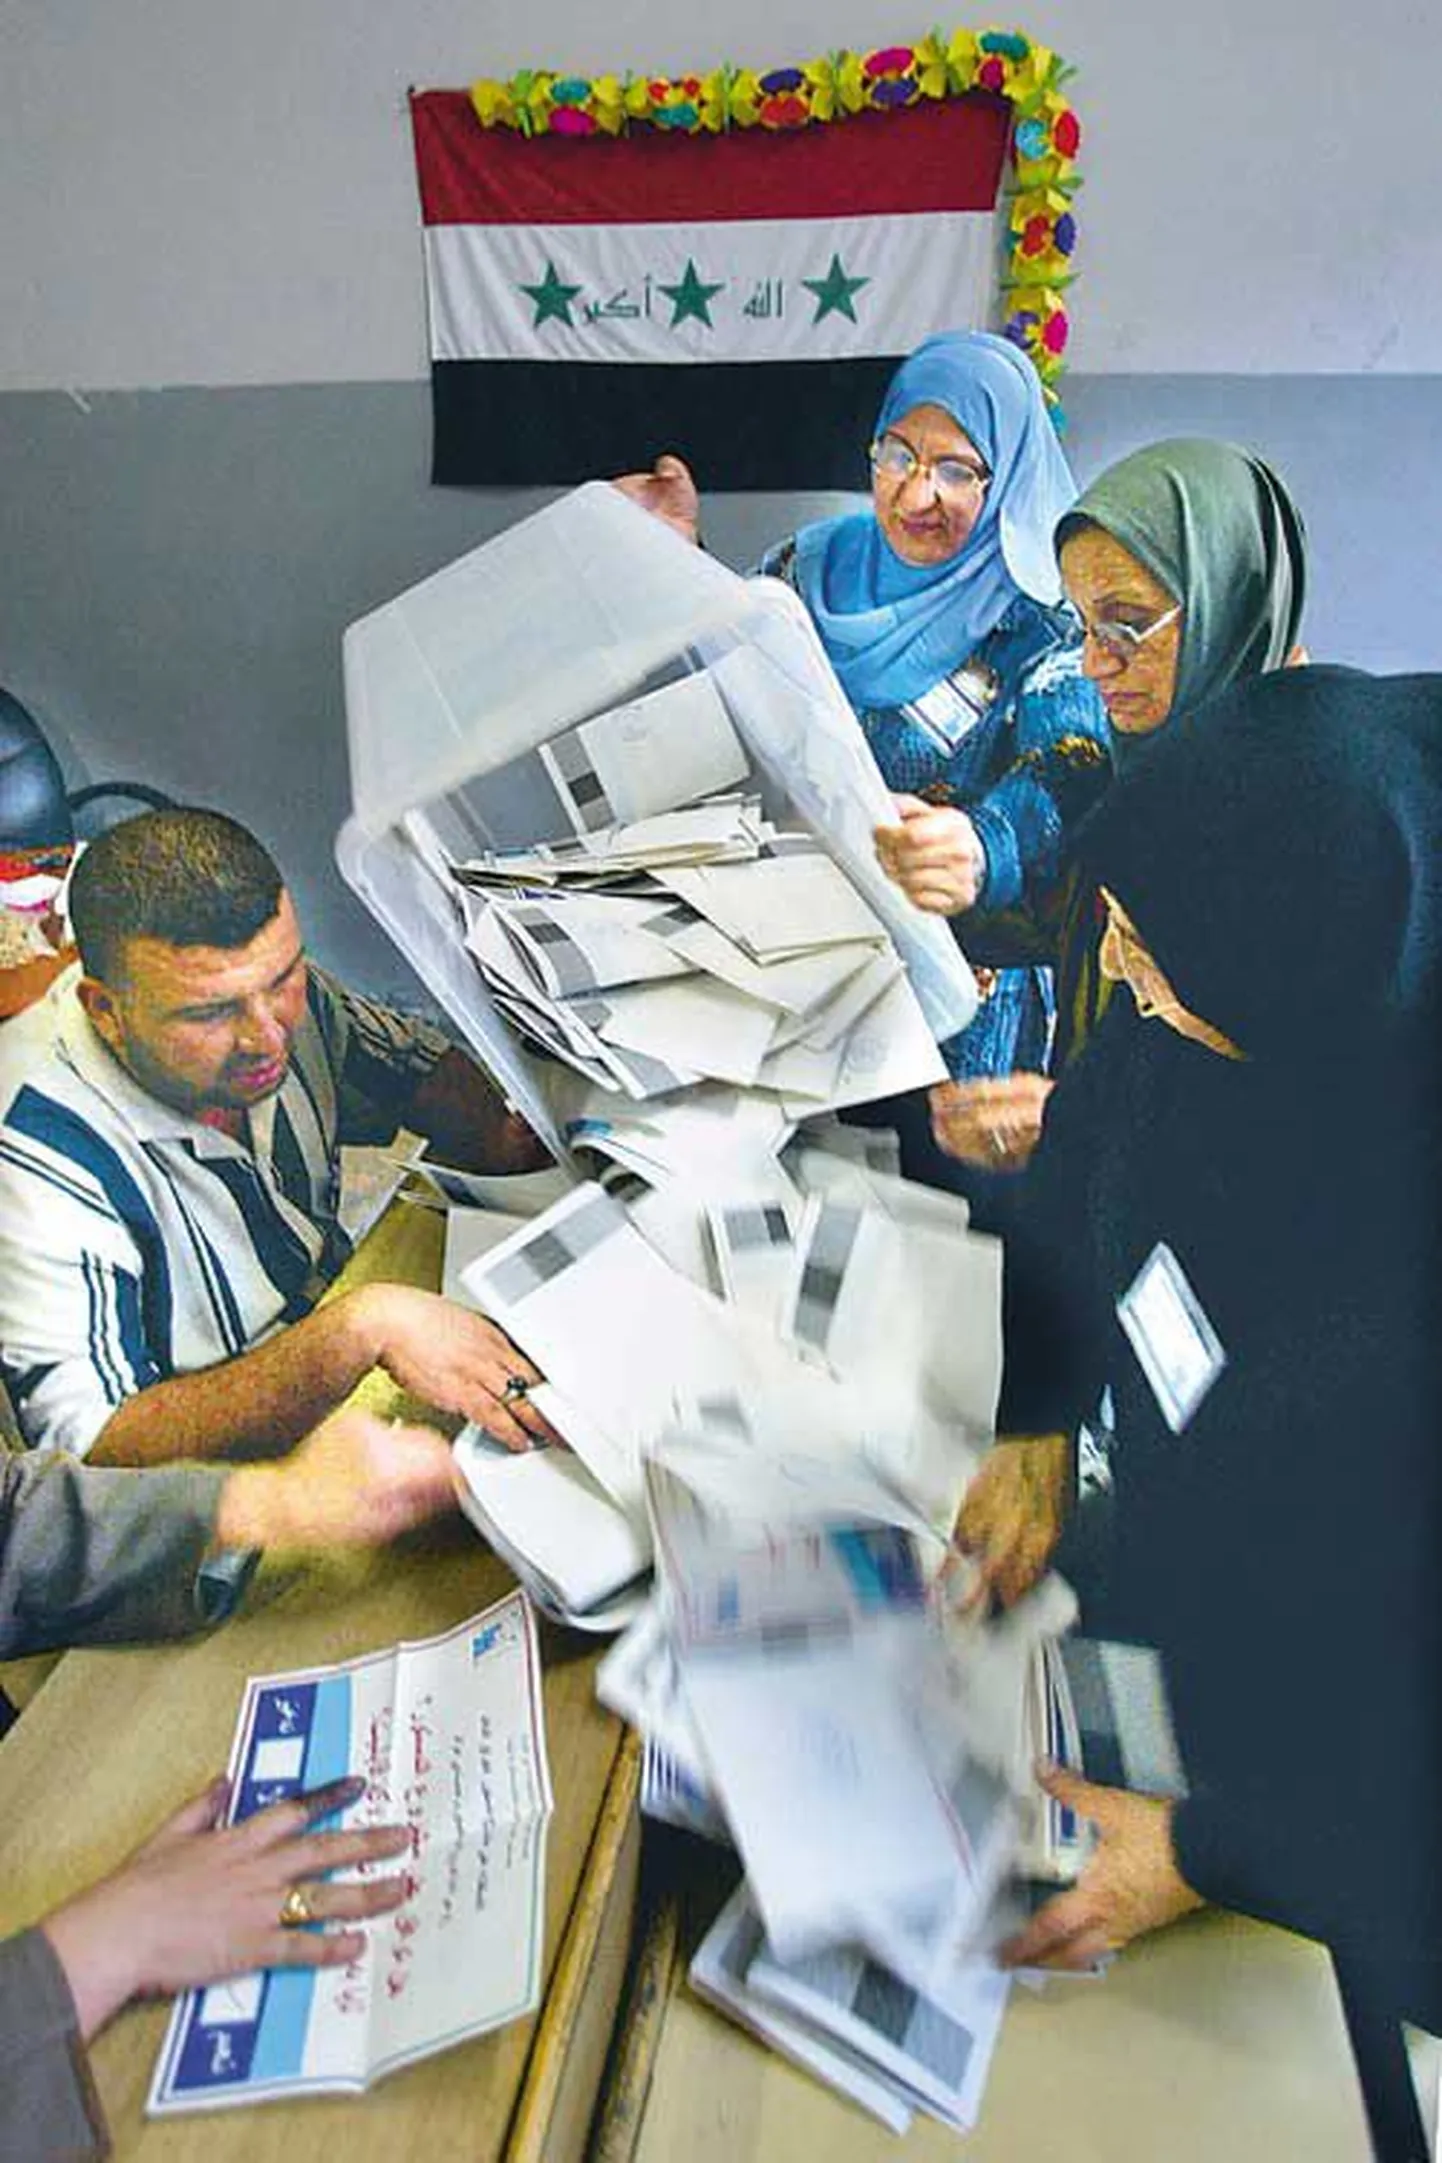 Ametnikud asusid Iraagi uue põhiseaduse referendumil antud hääli lugema kohe pärast valimisjaoskondade sulgemist 15. oktoobril. Ametlik hääletustulemus, et iraaklased on põhiseaduse heaks kiitnud, selgus aga alles eile.